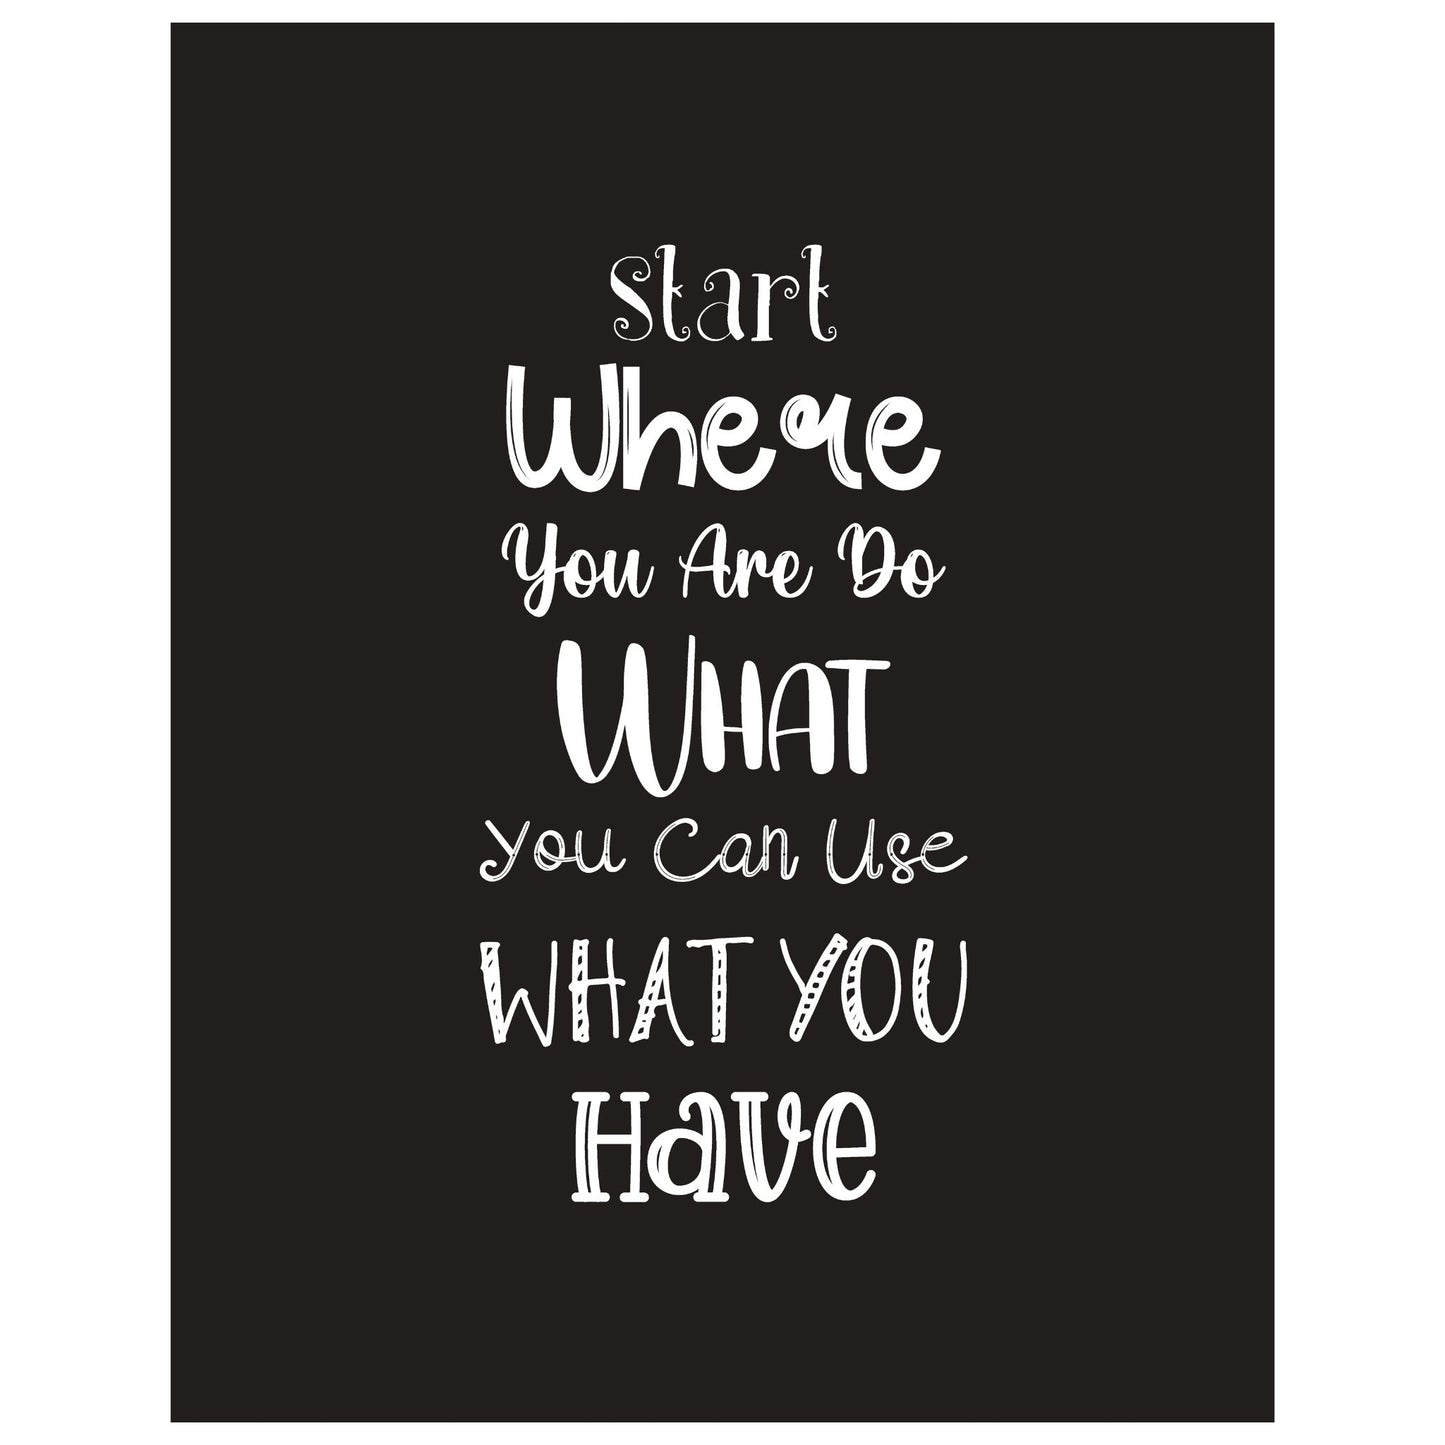 Grafisk tekstplakat med tekst "Start where you are, do what you can, use what you have" med hvit tekst på sort bakgrunn. 